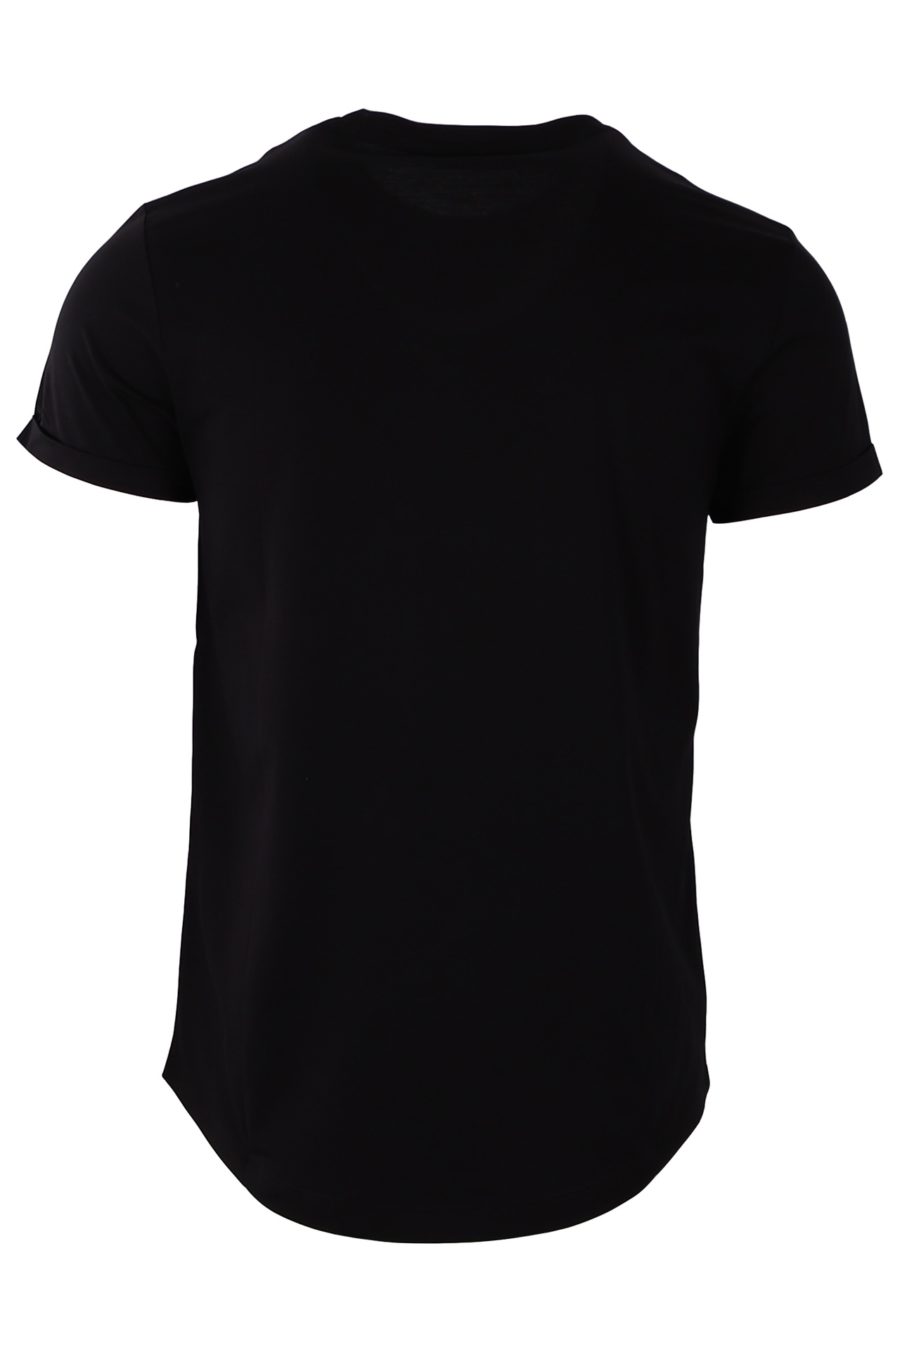 Camiseta Balmain negra logo redondo de terciopelo - 6ece680c74232d5e88ea3dd02607499af81dfe2e